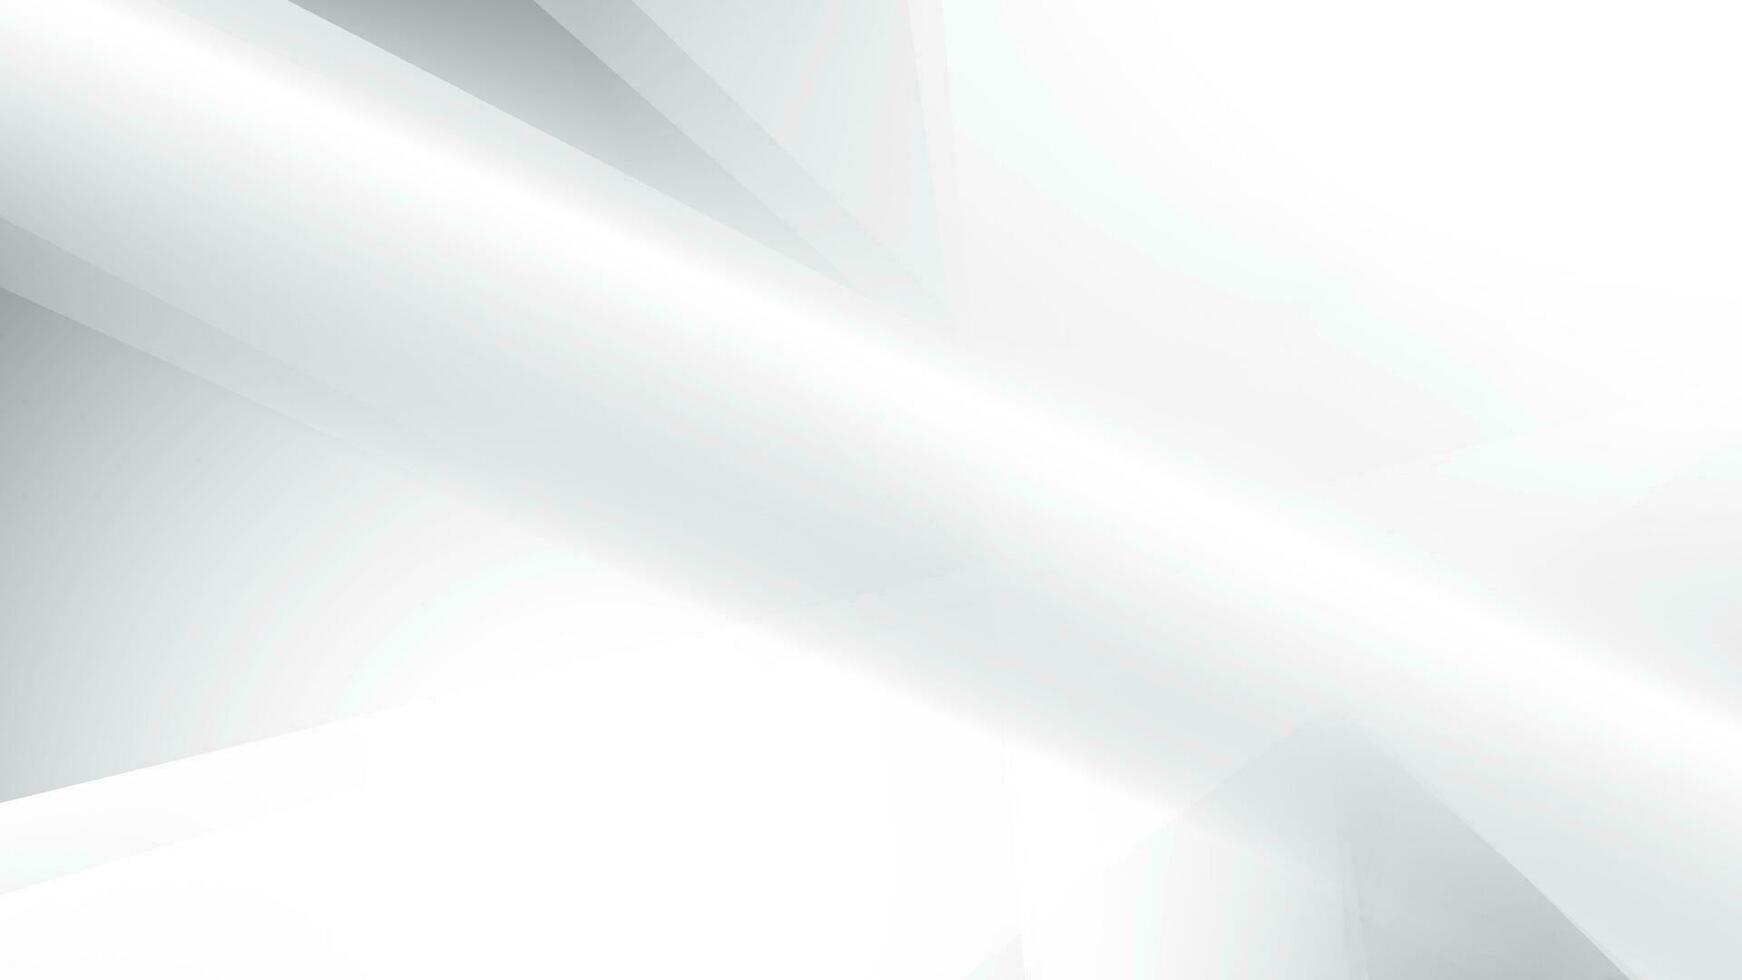 astratto bianca e grigio colore, moderno design strisce sfondo con geometrico forma. vettore illustrazione.